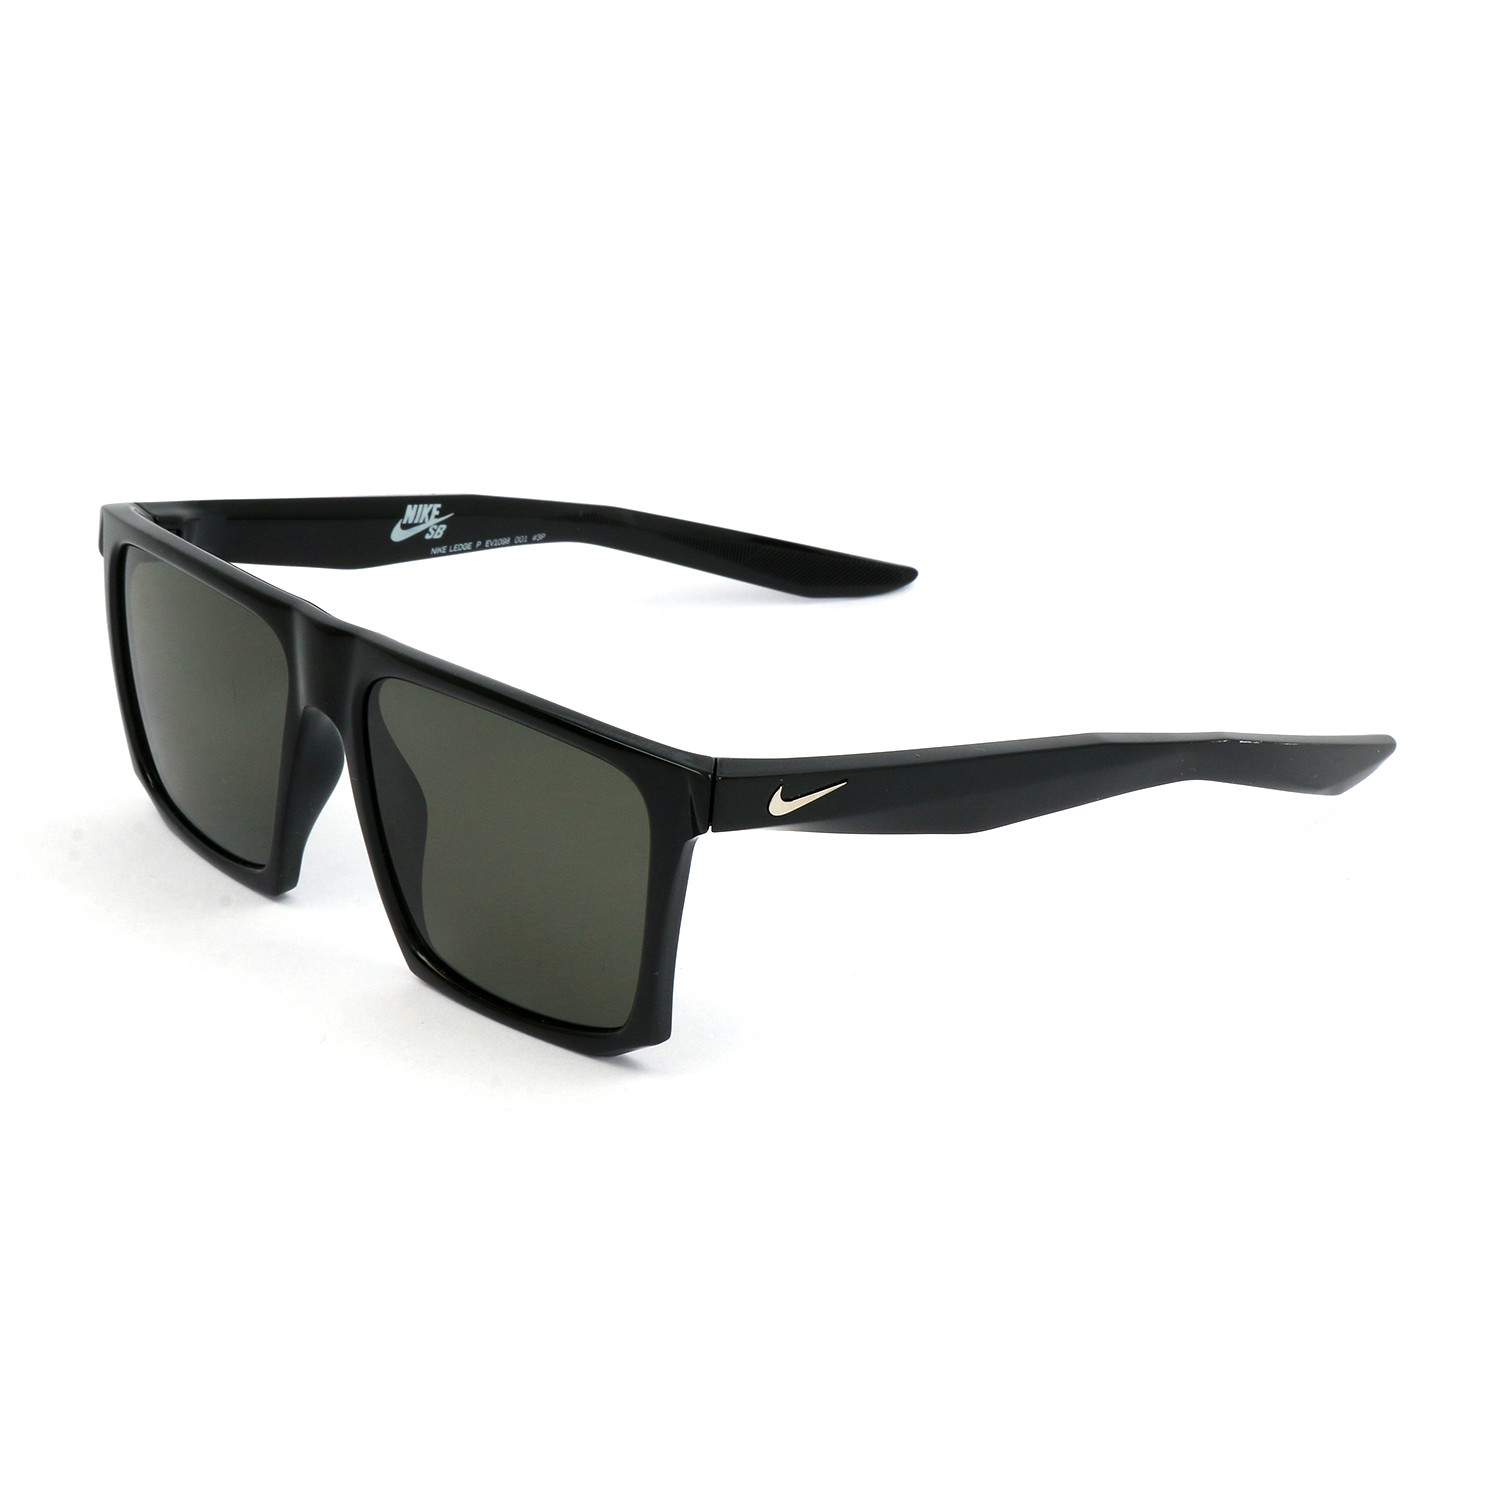 Men's Ledge Polarized Sunglasses // Black + Gray - Nike - Touch of Modern